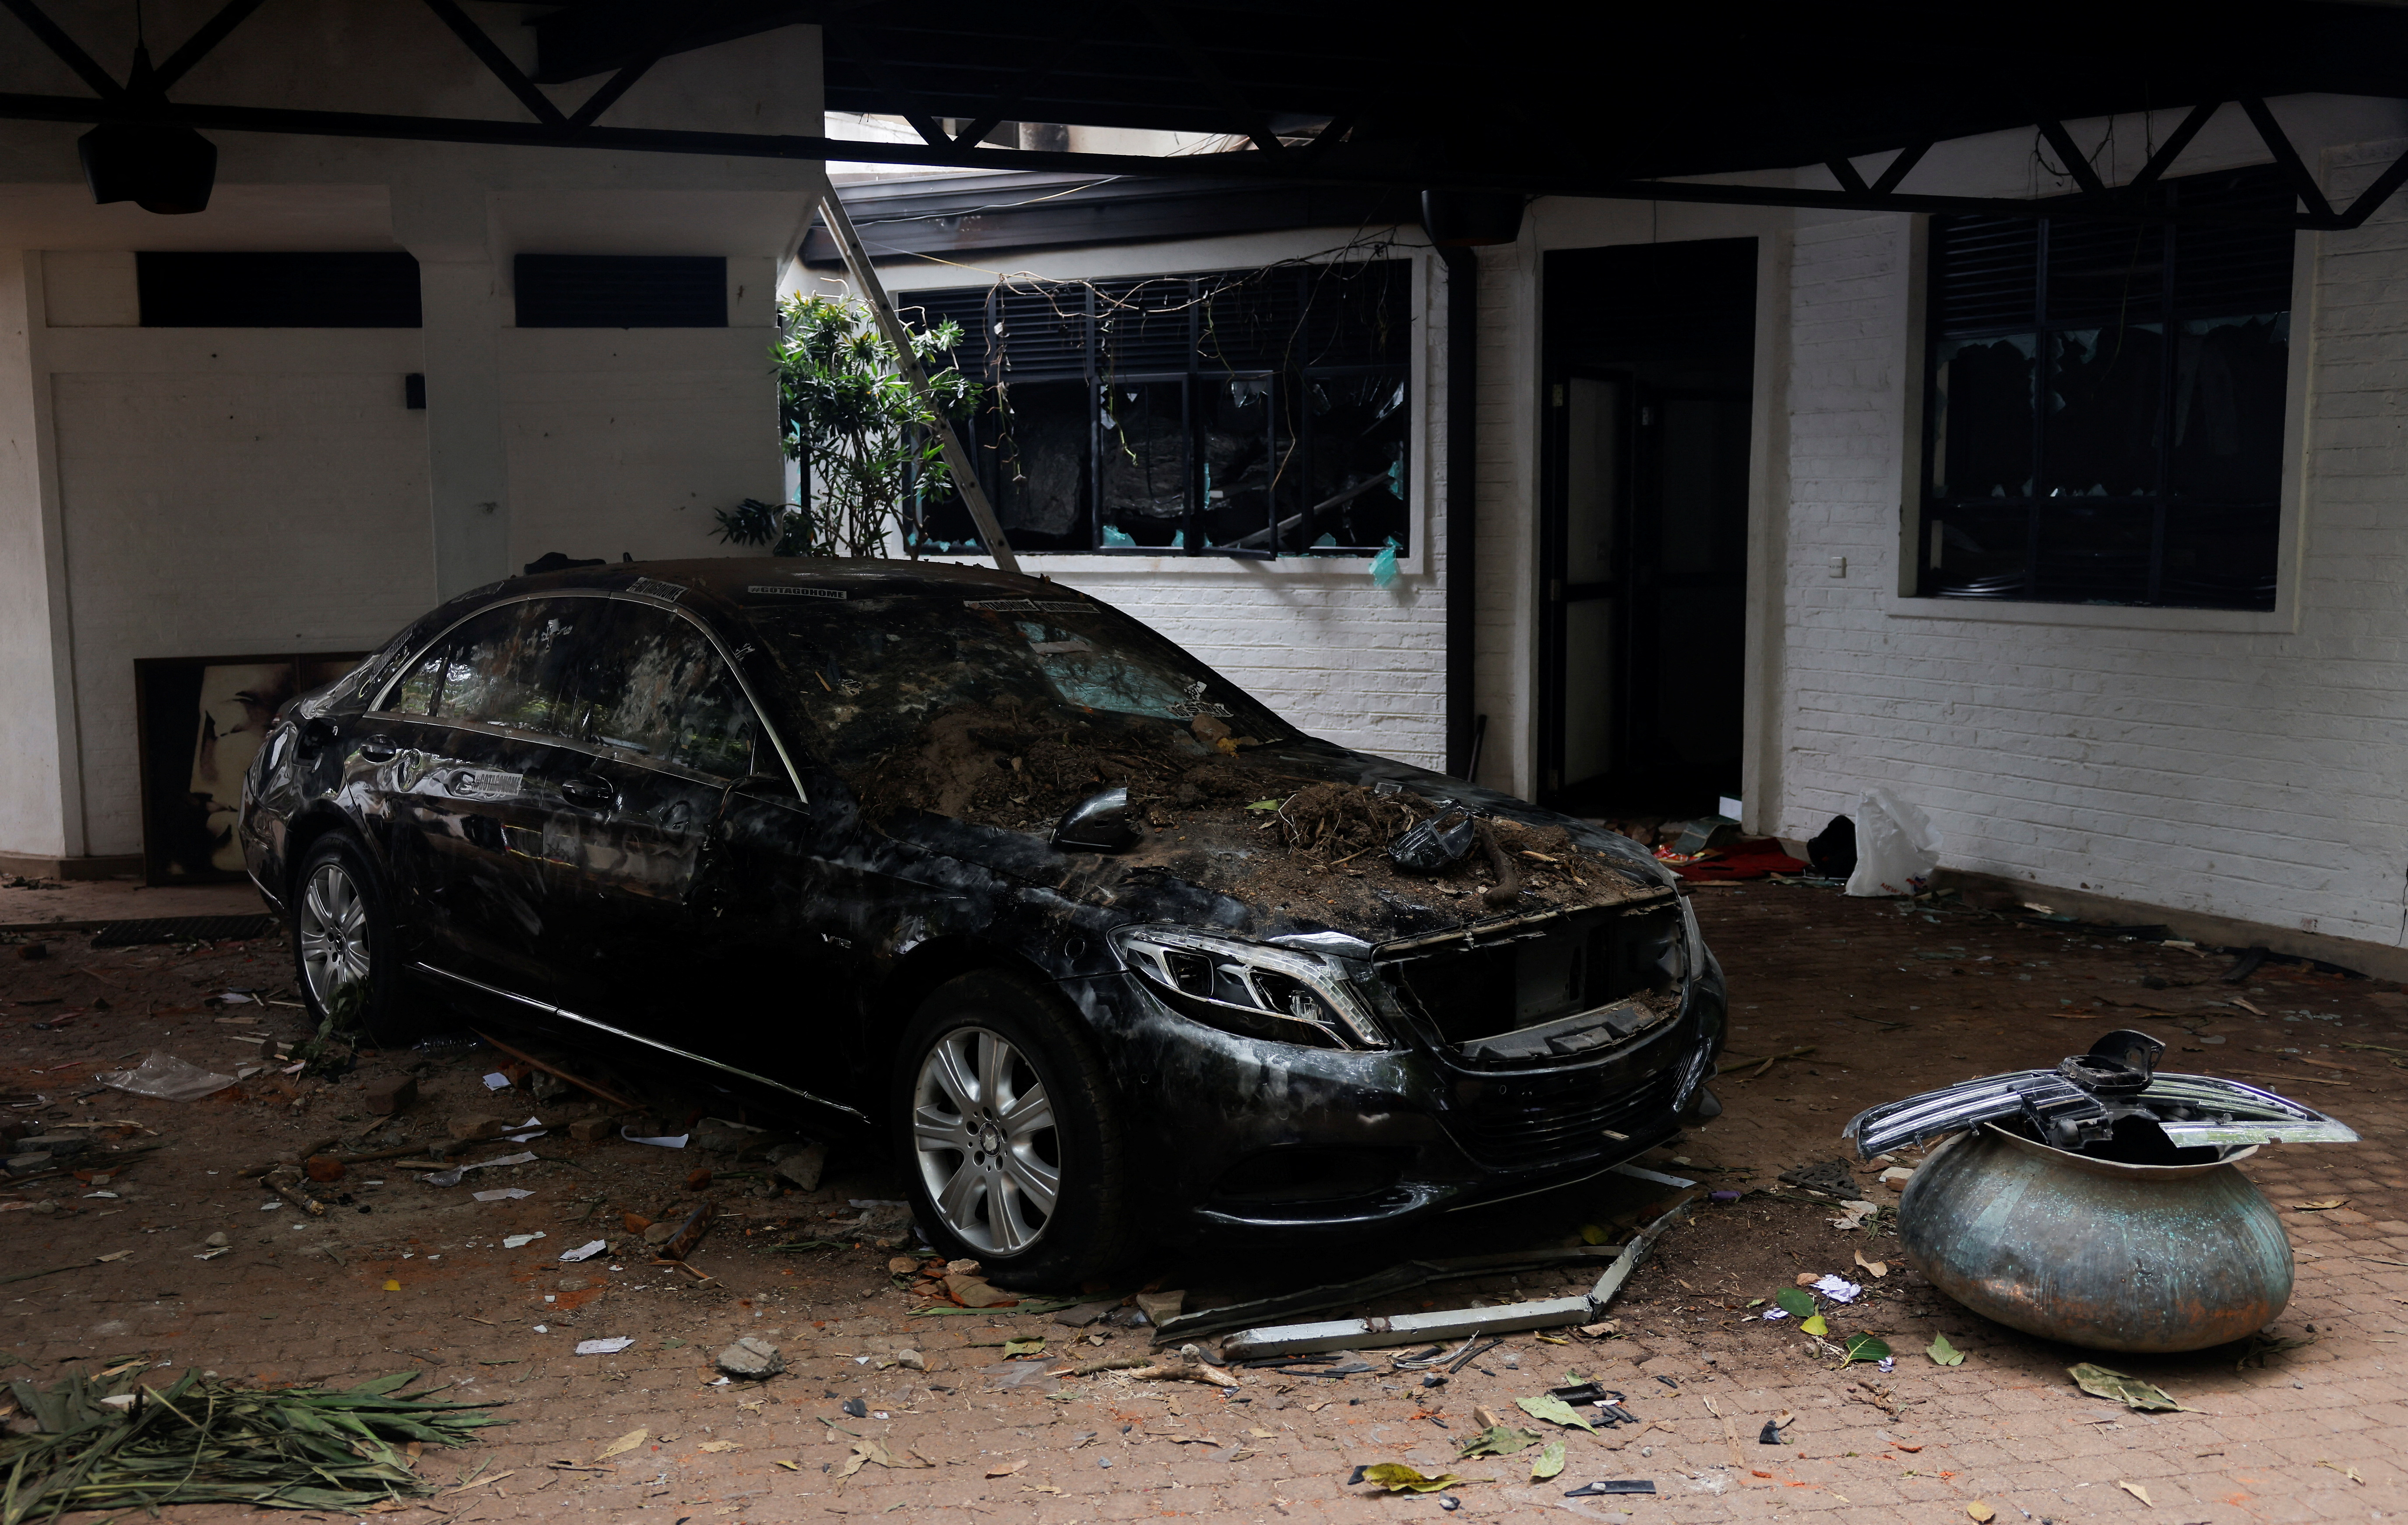 Un automóvil dañado quedó abandonado tras la guida del mandatario (REUTERS/Dinuka Liyanawatte)